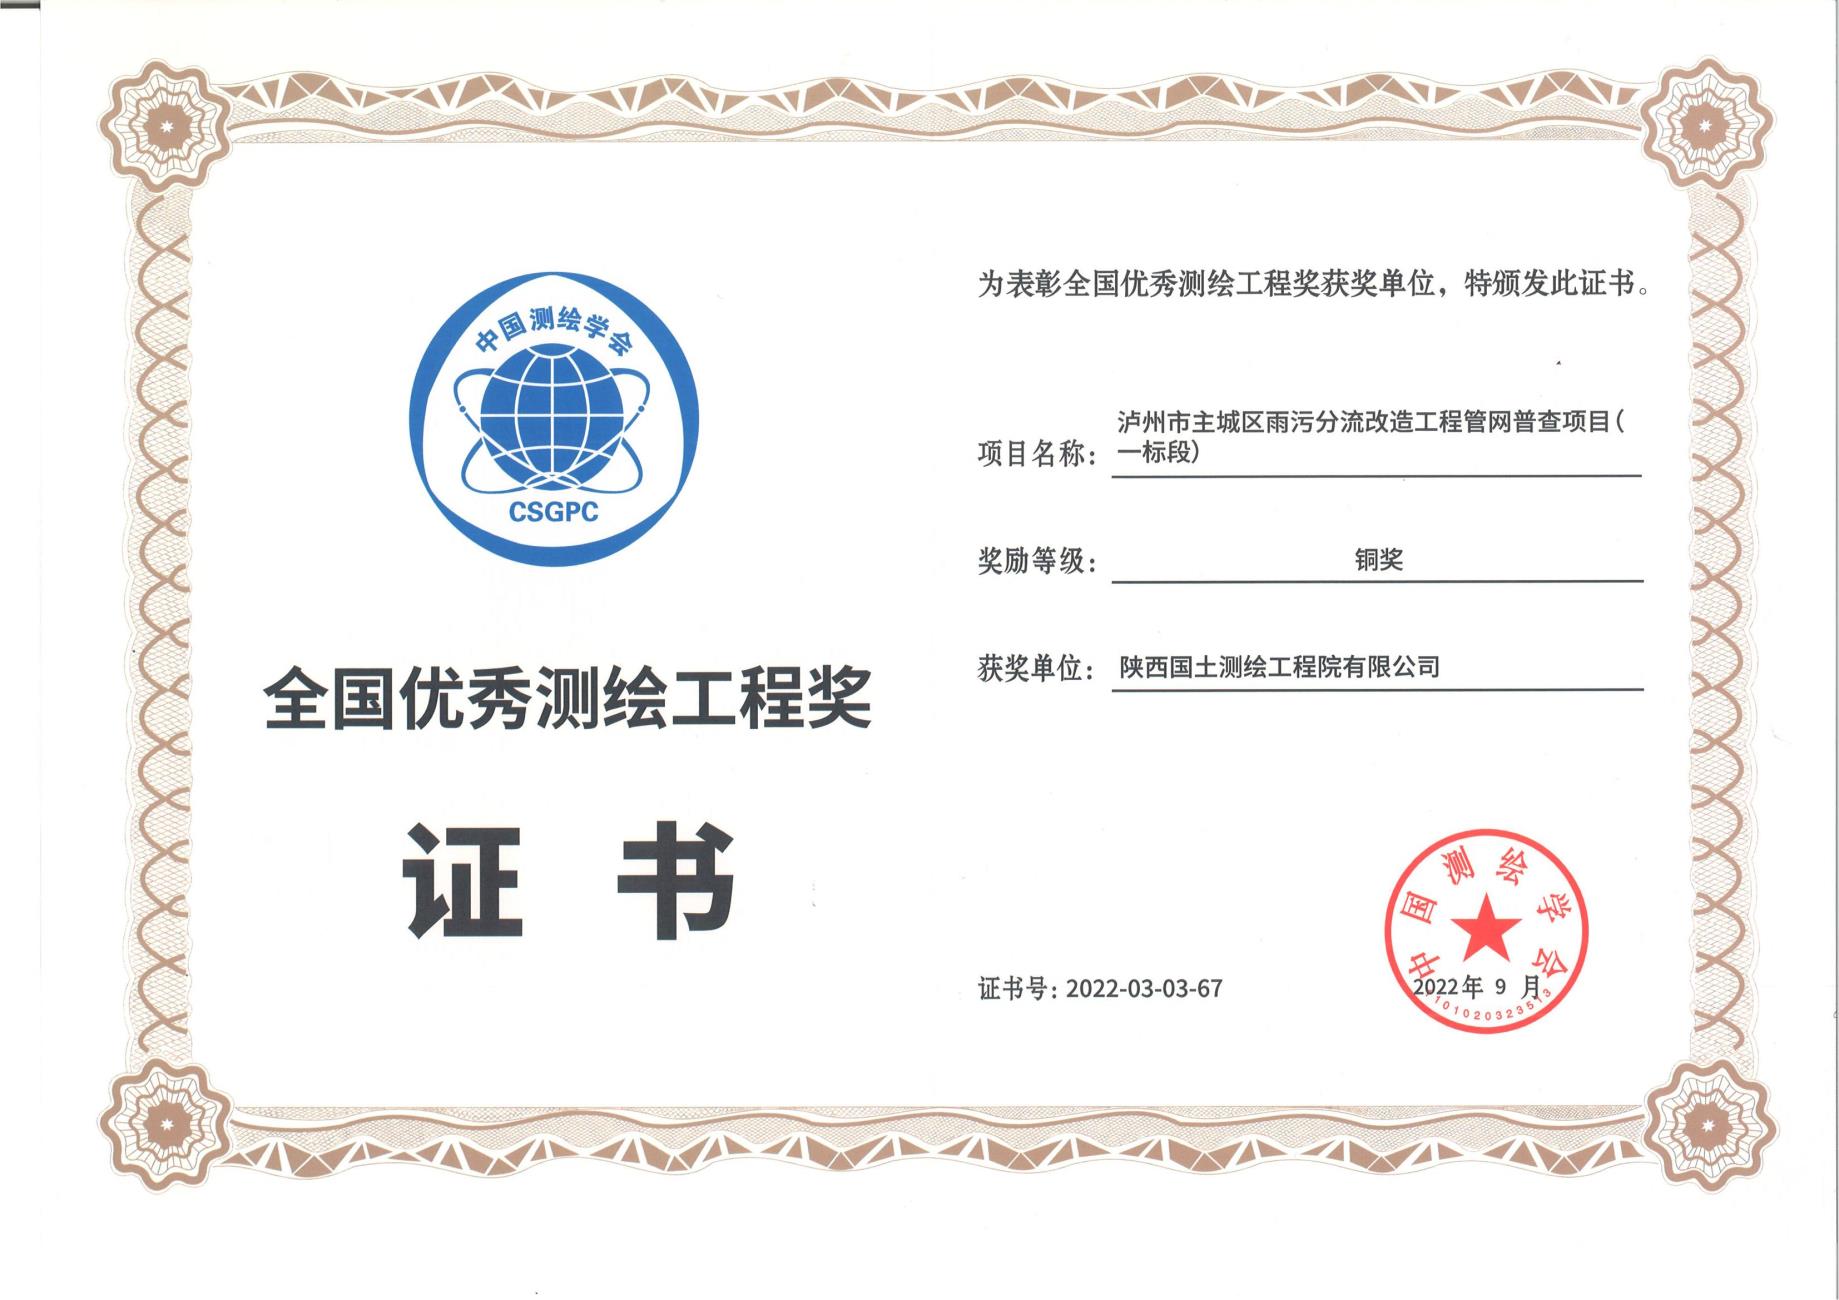 测绘院连续四年荣获 “中国测绘学会全国优秀测绘工程奖”